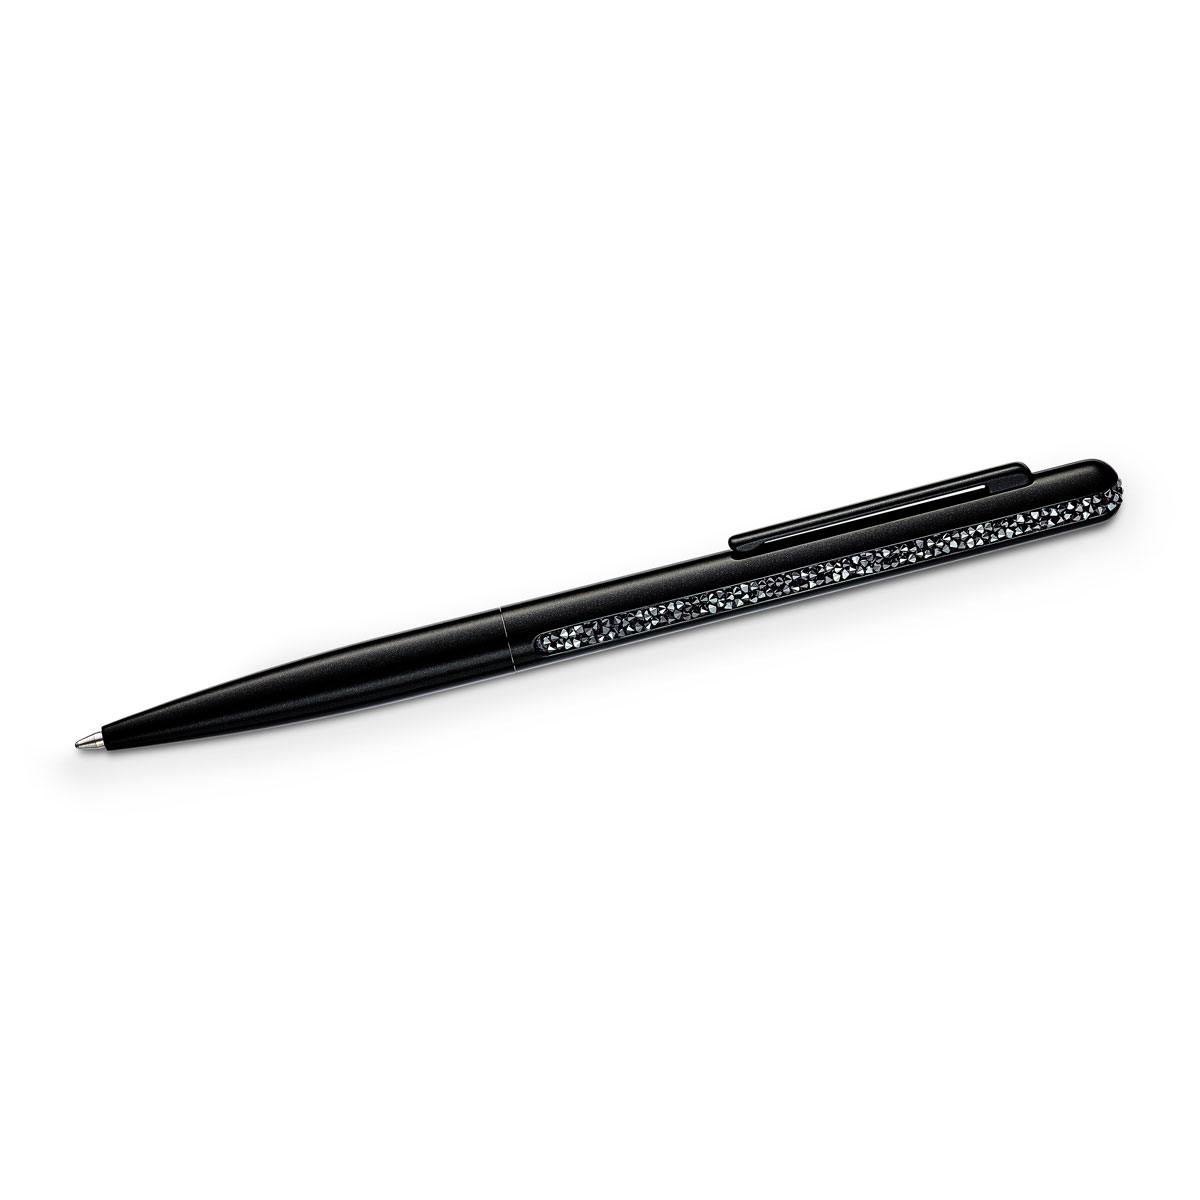 Swarovski Shimmer Black Ballpoint Pen